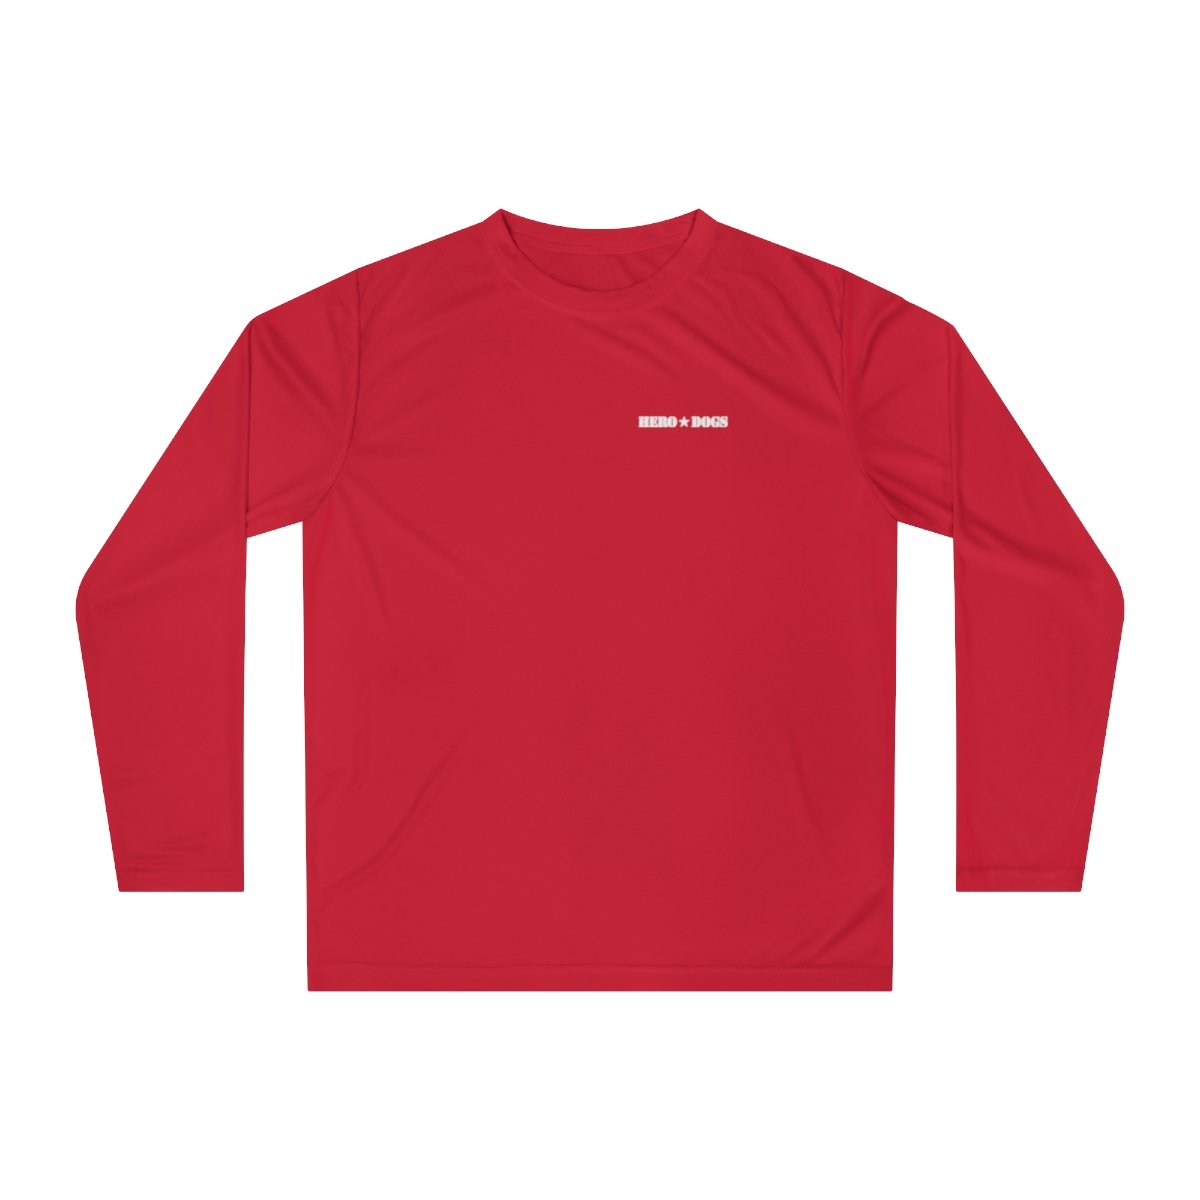 Unisex Performance Long Sleeve Shirt product main image